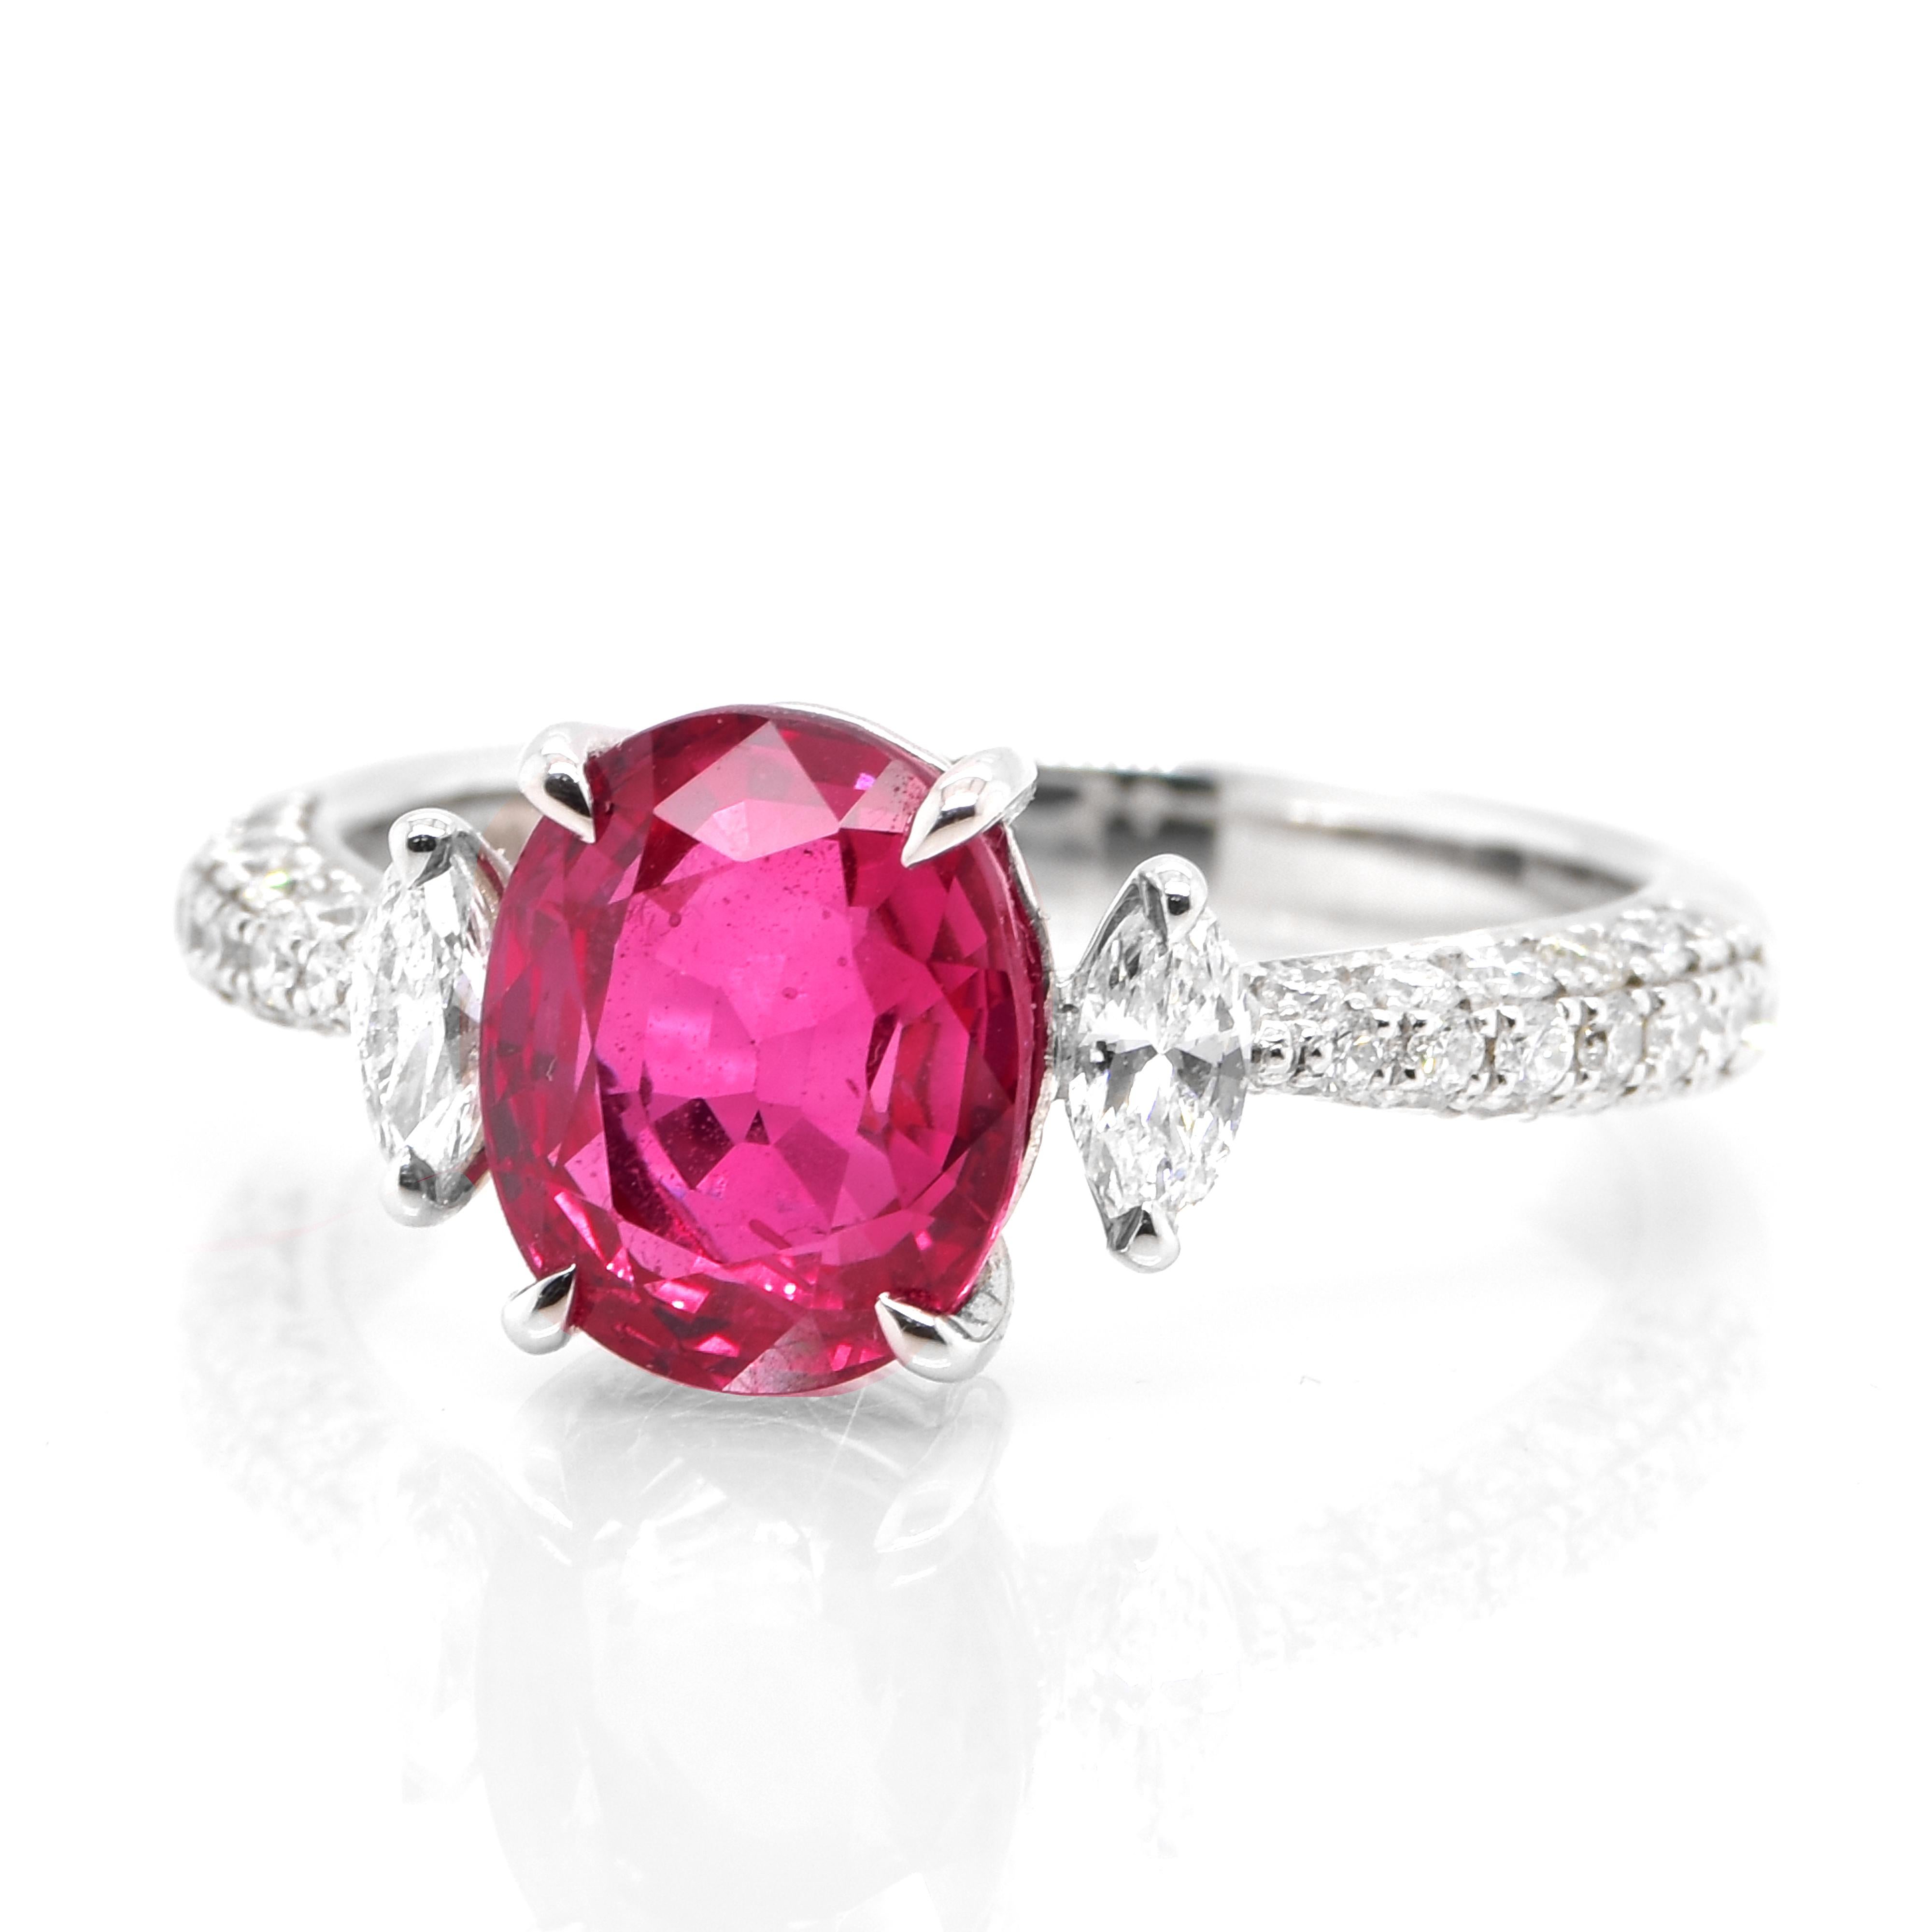 Magnifique bague en platine sertie d'un rubis Siam naturel certifié GIA de 3,17 carats et de diamants de 0,52 carat. Les rubis sont appelés 